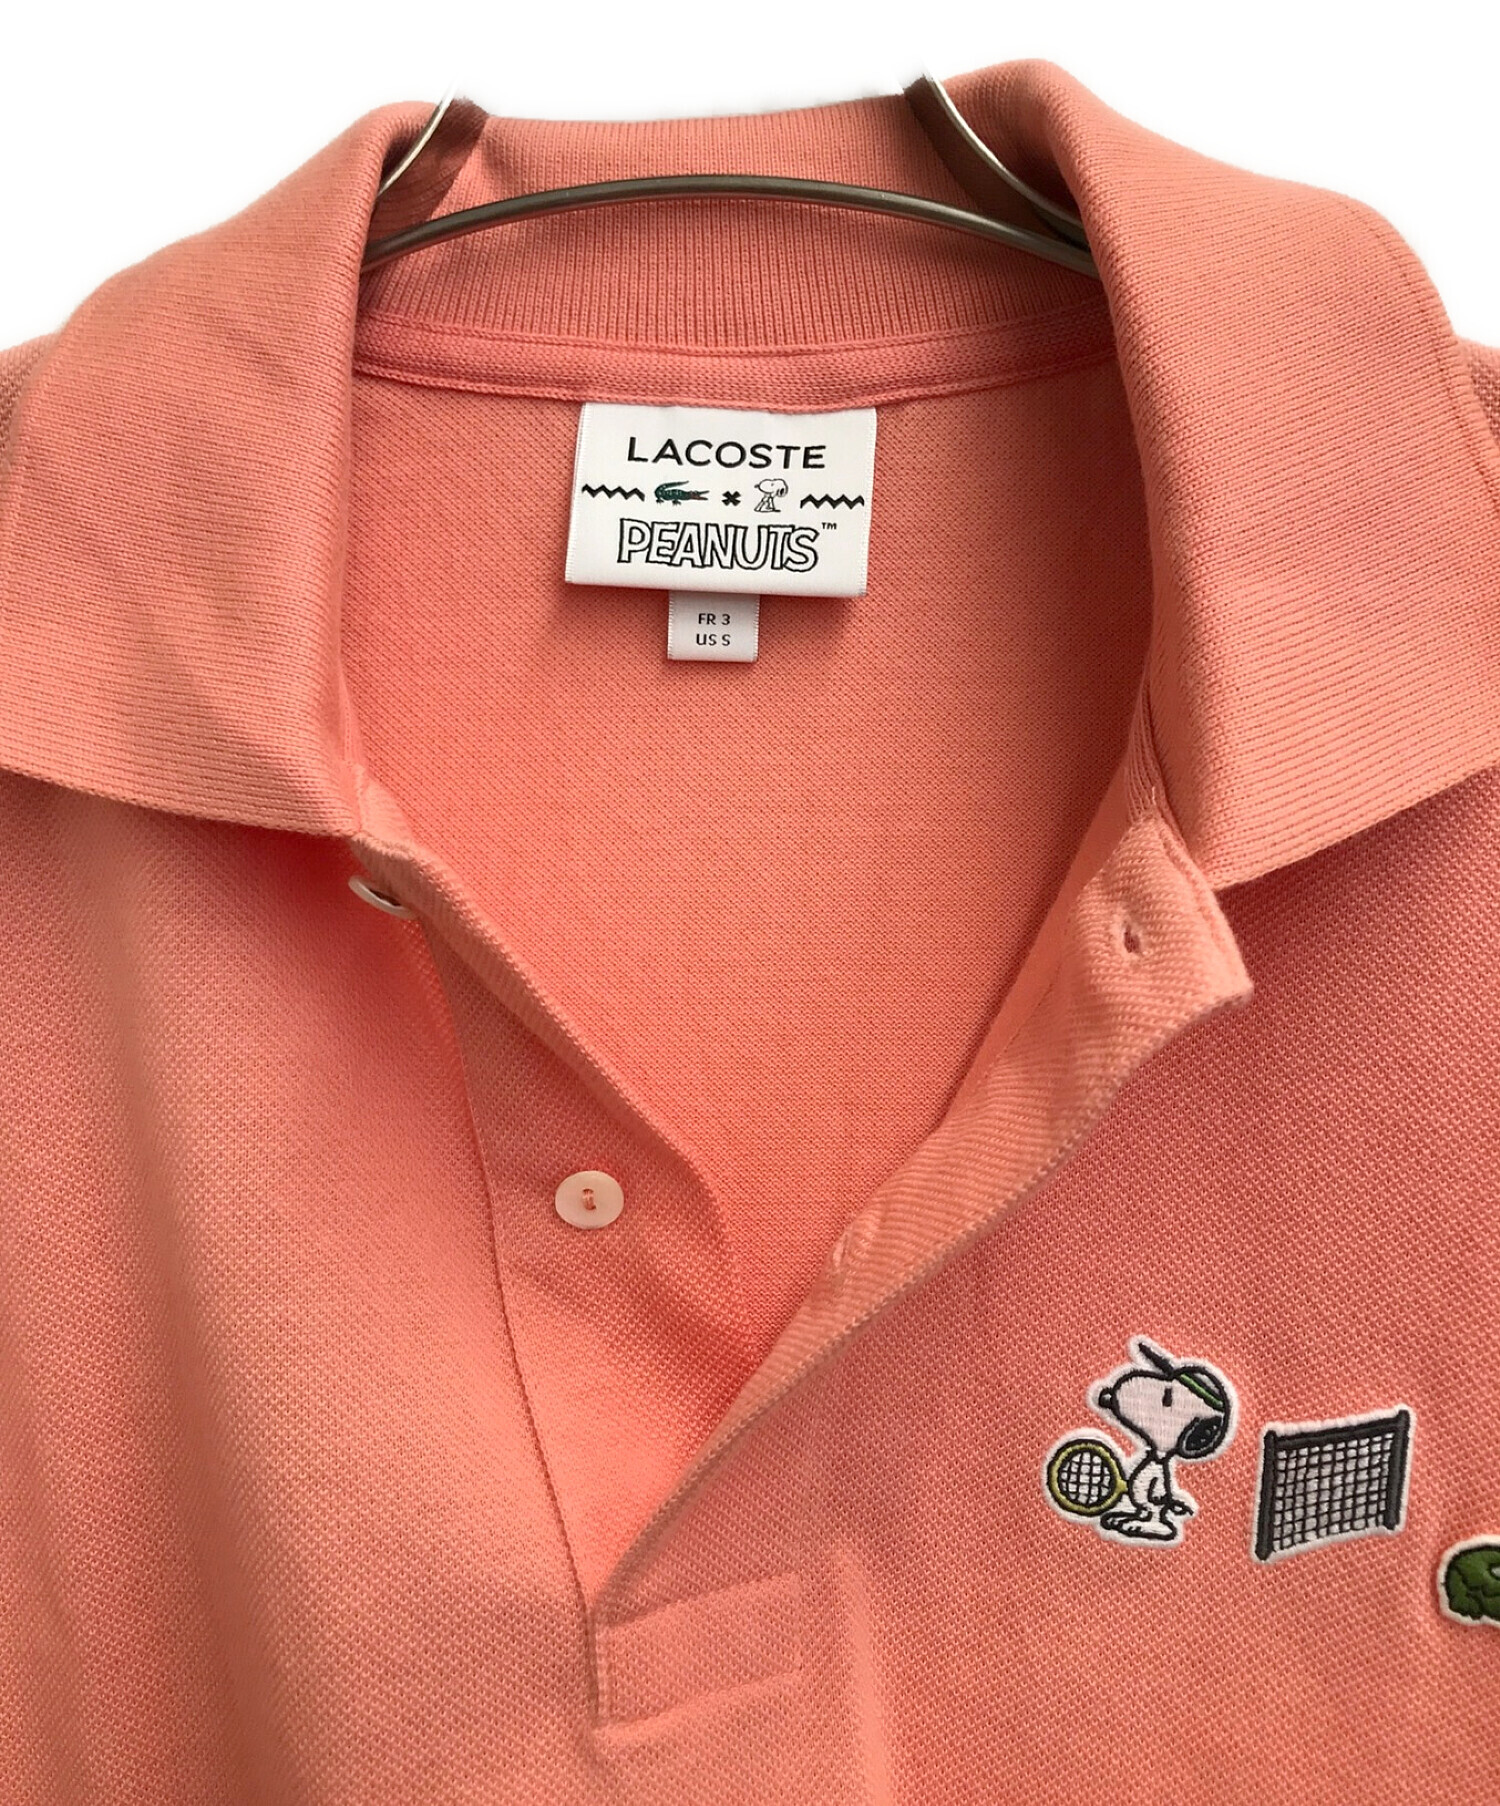 LACOSTE (ラコステ) PEANUTS (ピーナッツ) ポロシャツ ピンク サイズ:FR 3